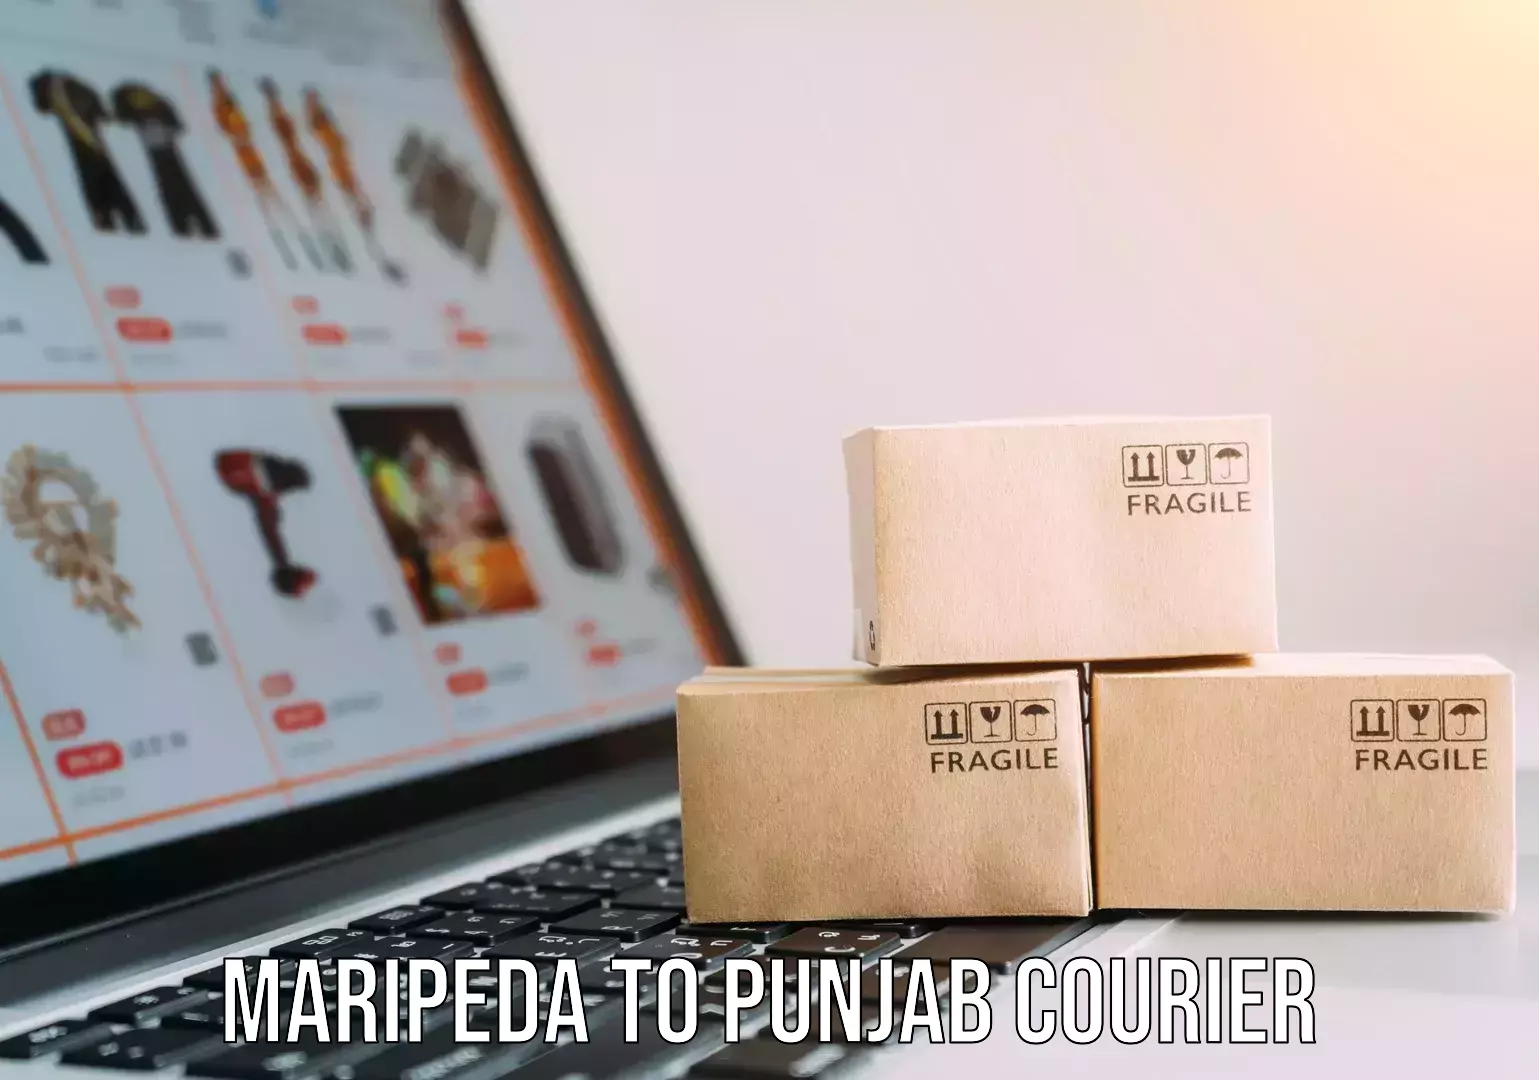 Reliable movers Maripeda to Punjab